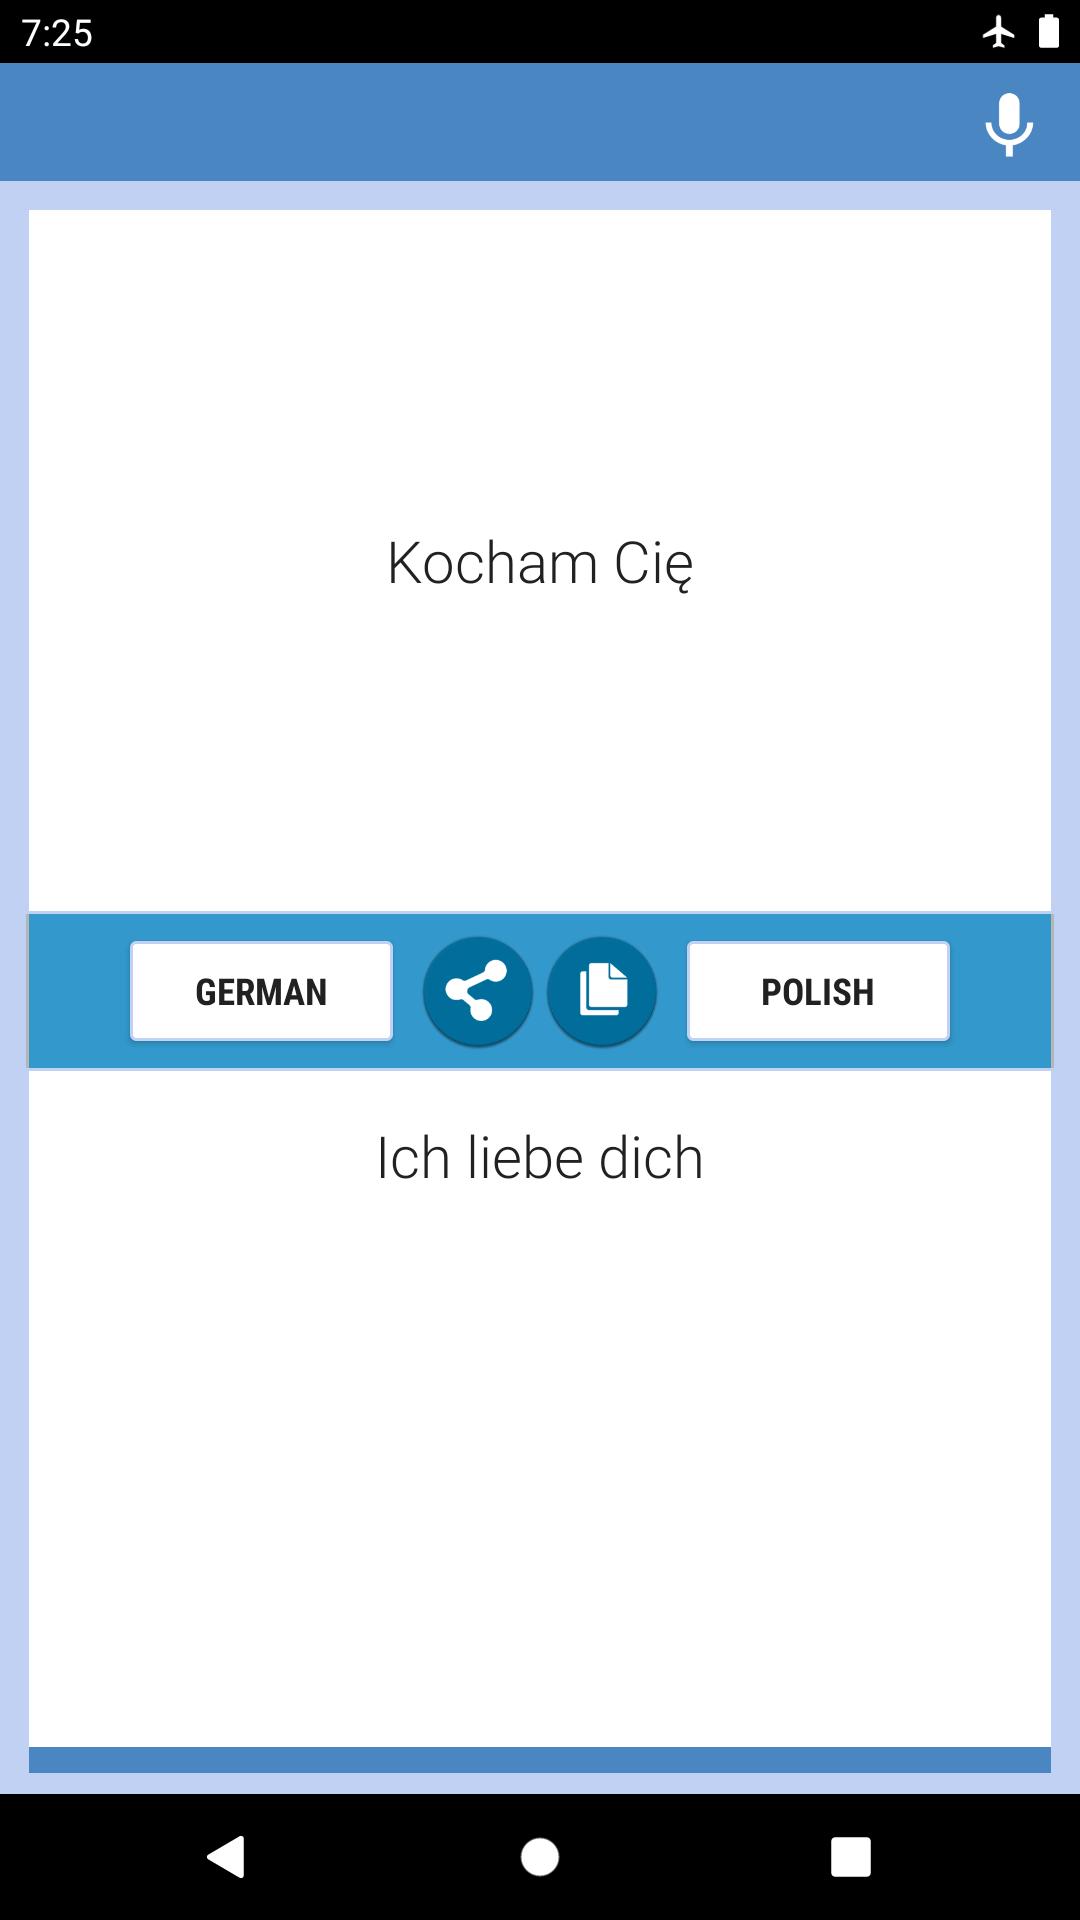 Tłumacz Polsko-Niemiecki for Android - APK Download